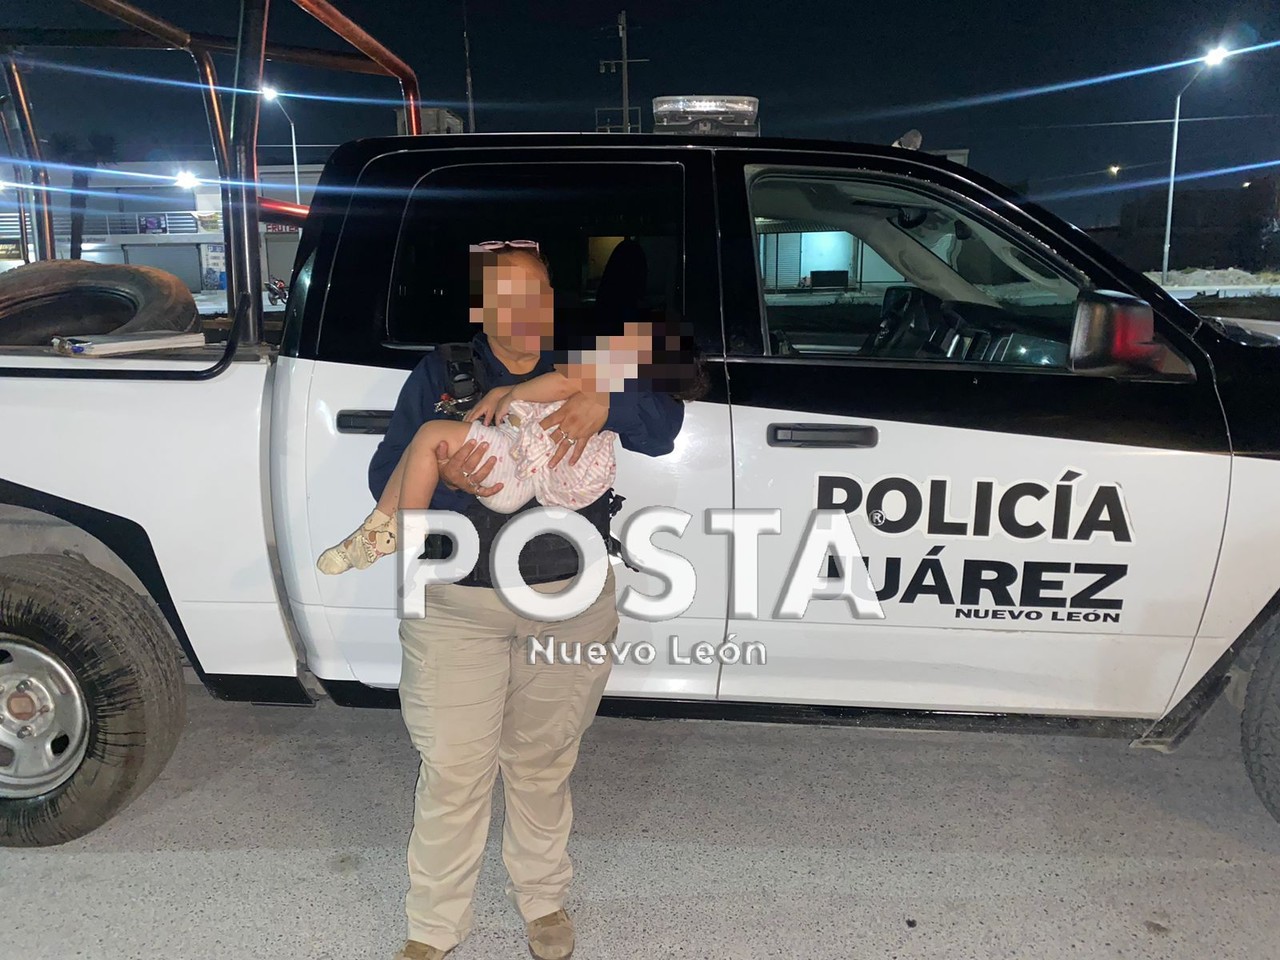 El hombre trató de entorpecer las labores policiales en repetidas ocasiones, por tal motivo fue detenido y puesto a disposición del Ministerio Público. Foto: Raymundo Elizalde.